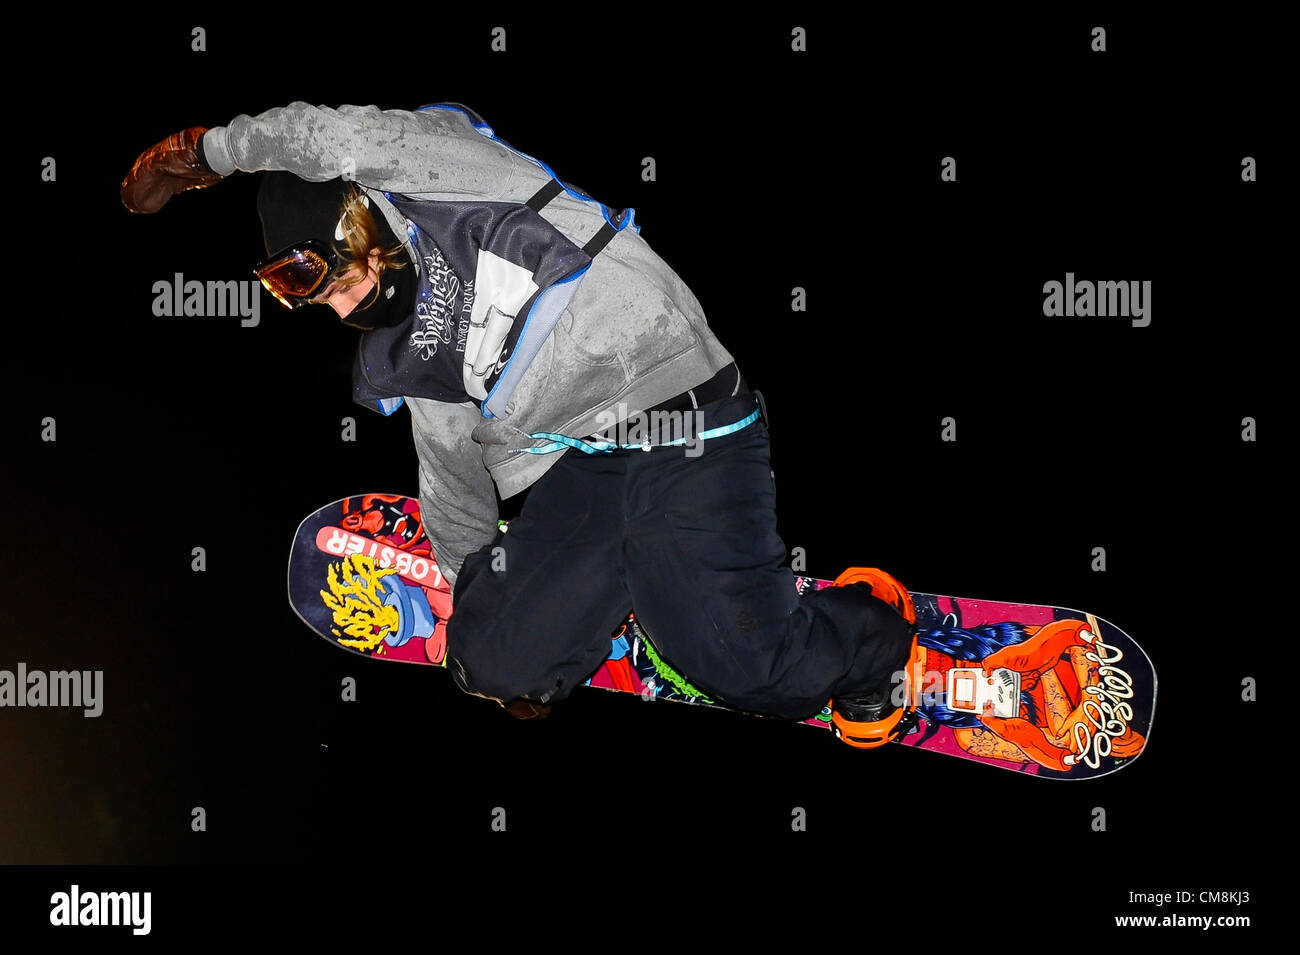 27.10.2012 Londres, Angleterre. Tor Lundstrom (SWE) en action sur le Big Air Jump pendant le gel Snowboard Big Air Comp finales à l'implacable gel Energy Drink Festival à Battersea Power Station. Banque D'Images